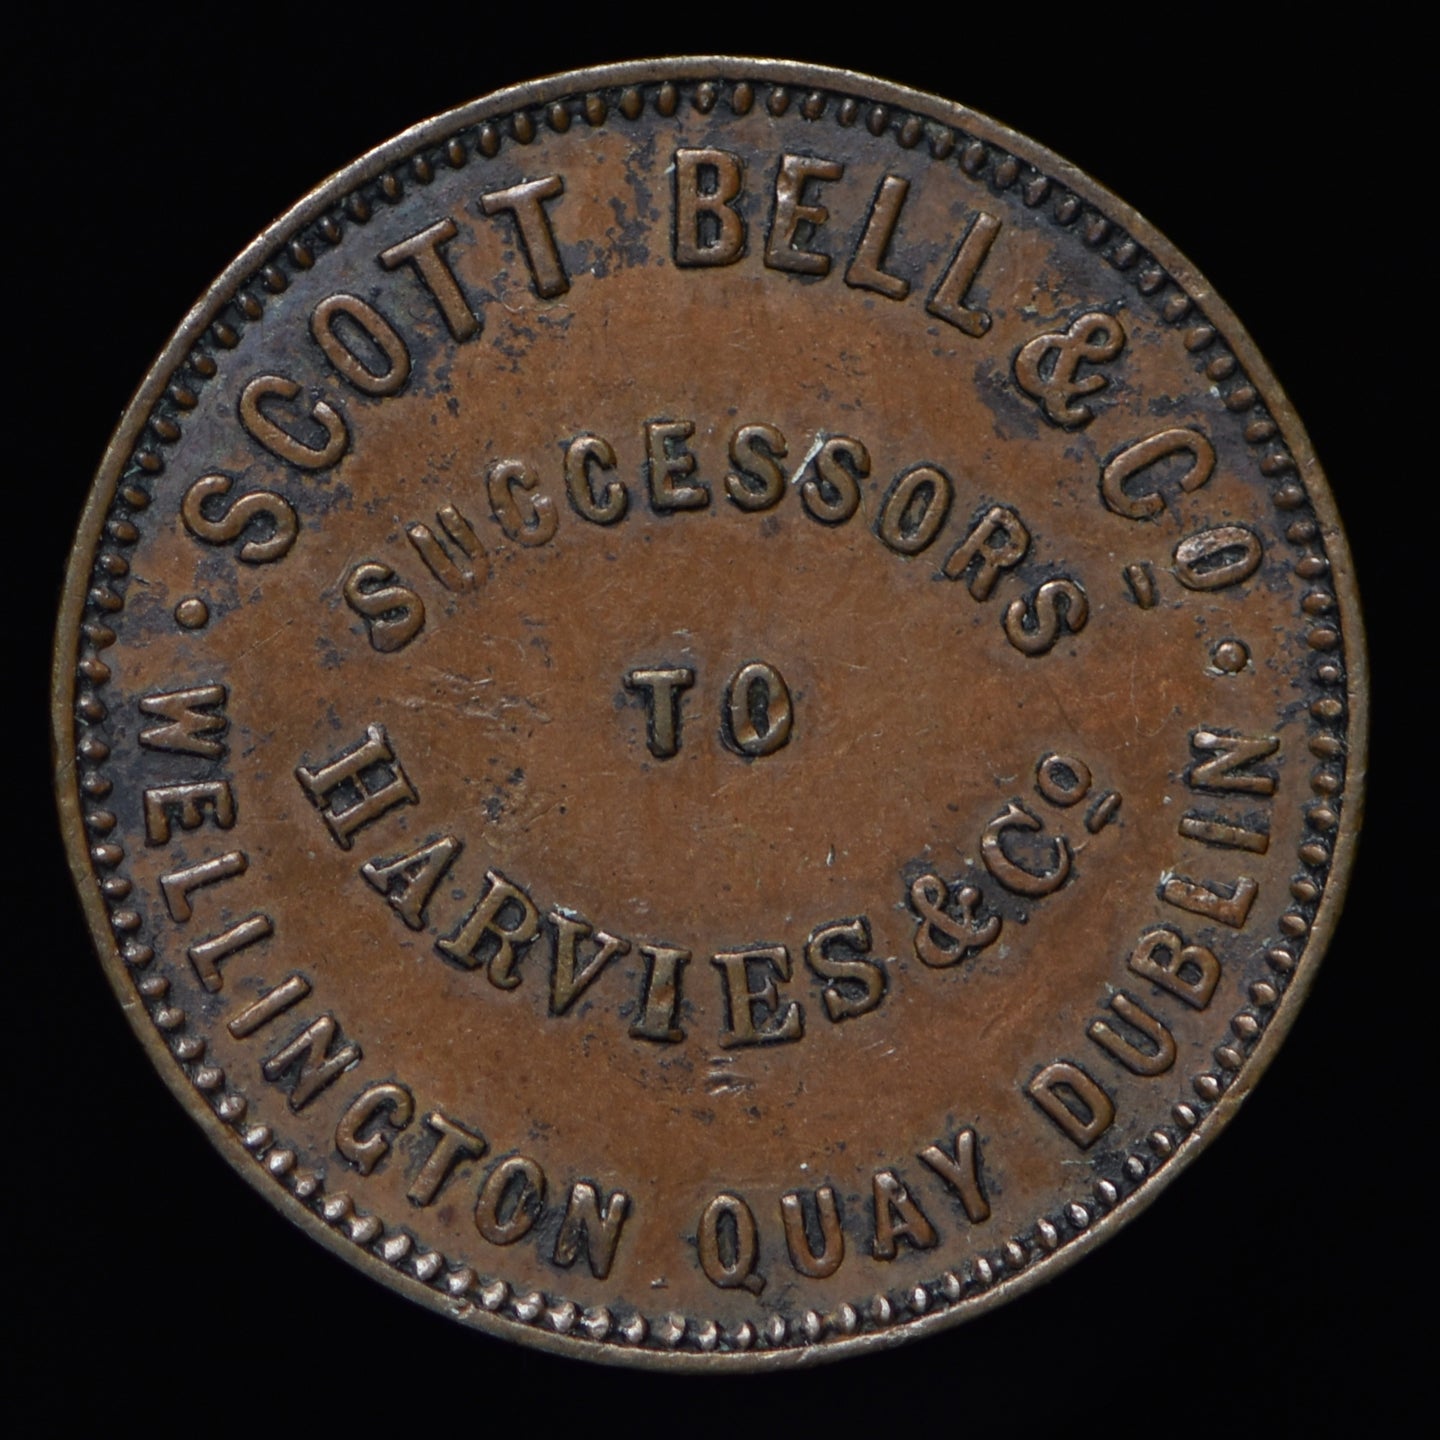 Dublin Scott, Bell & Co. W. 6220